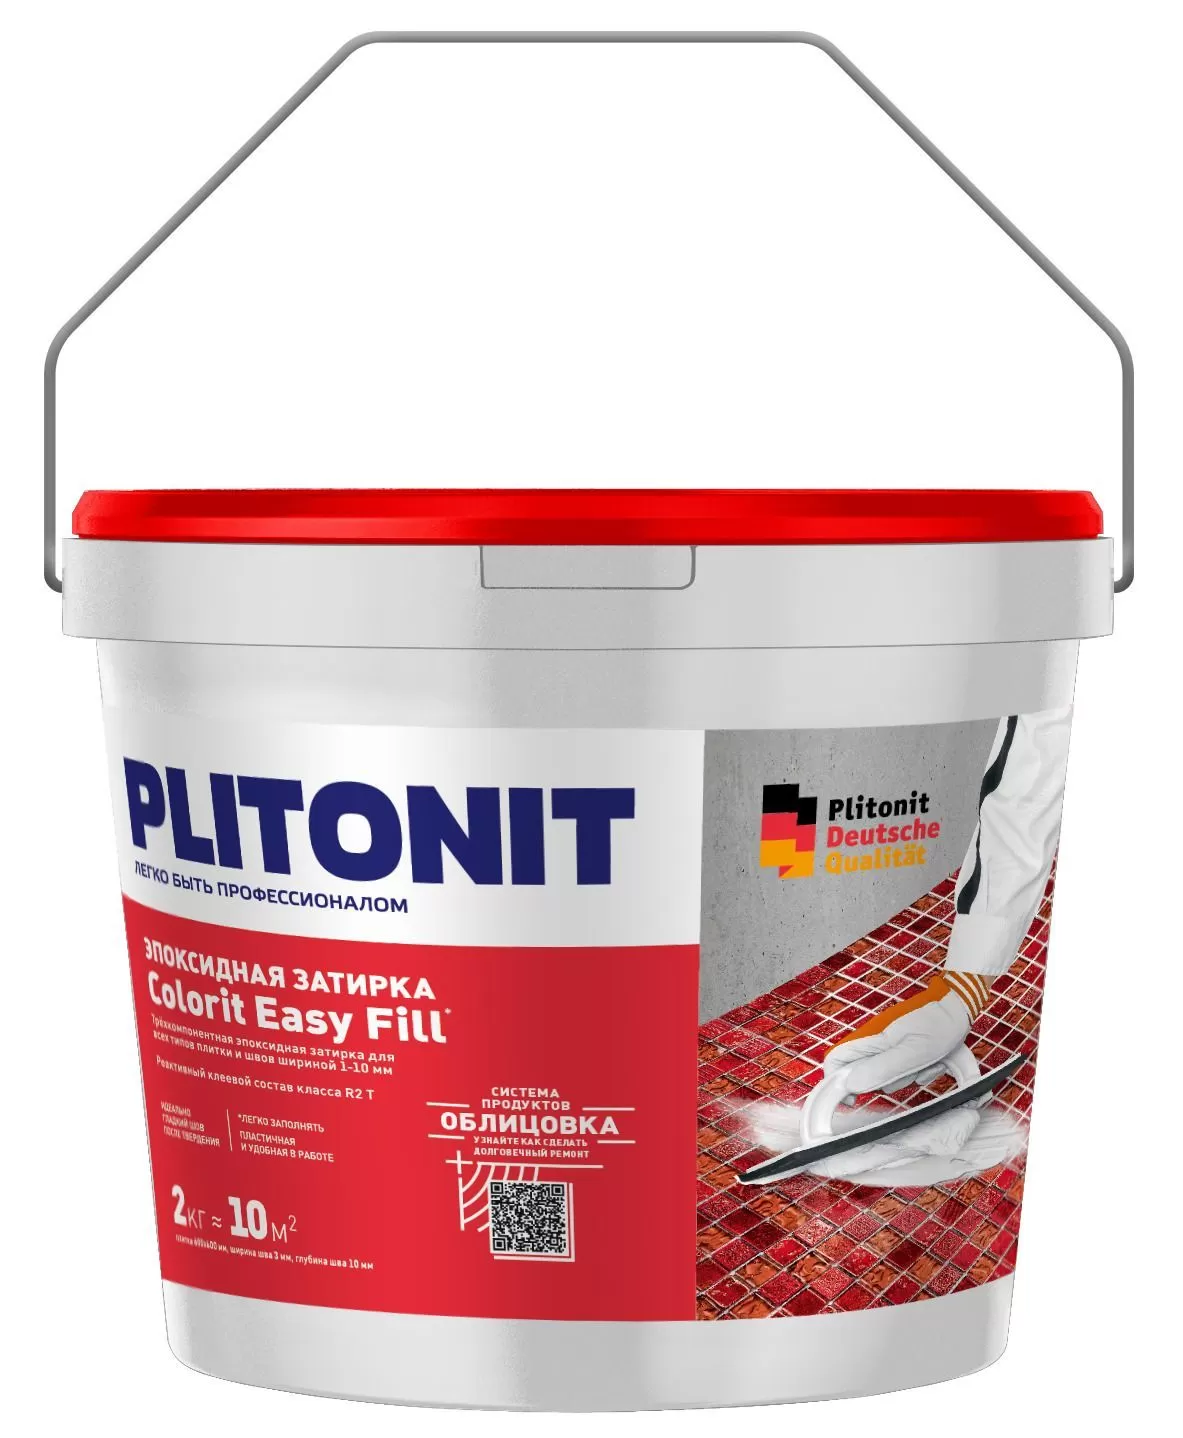 Купить Затирка эпоксидная PLITONIT Colorit EasyFill белый 2кг (ведро) Н008640